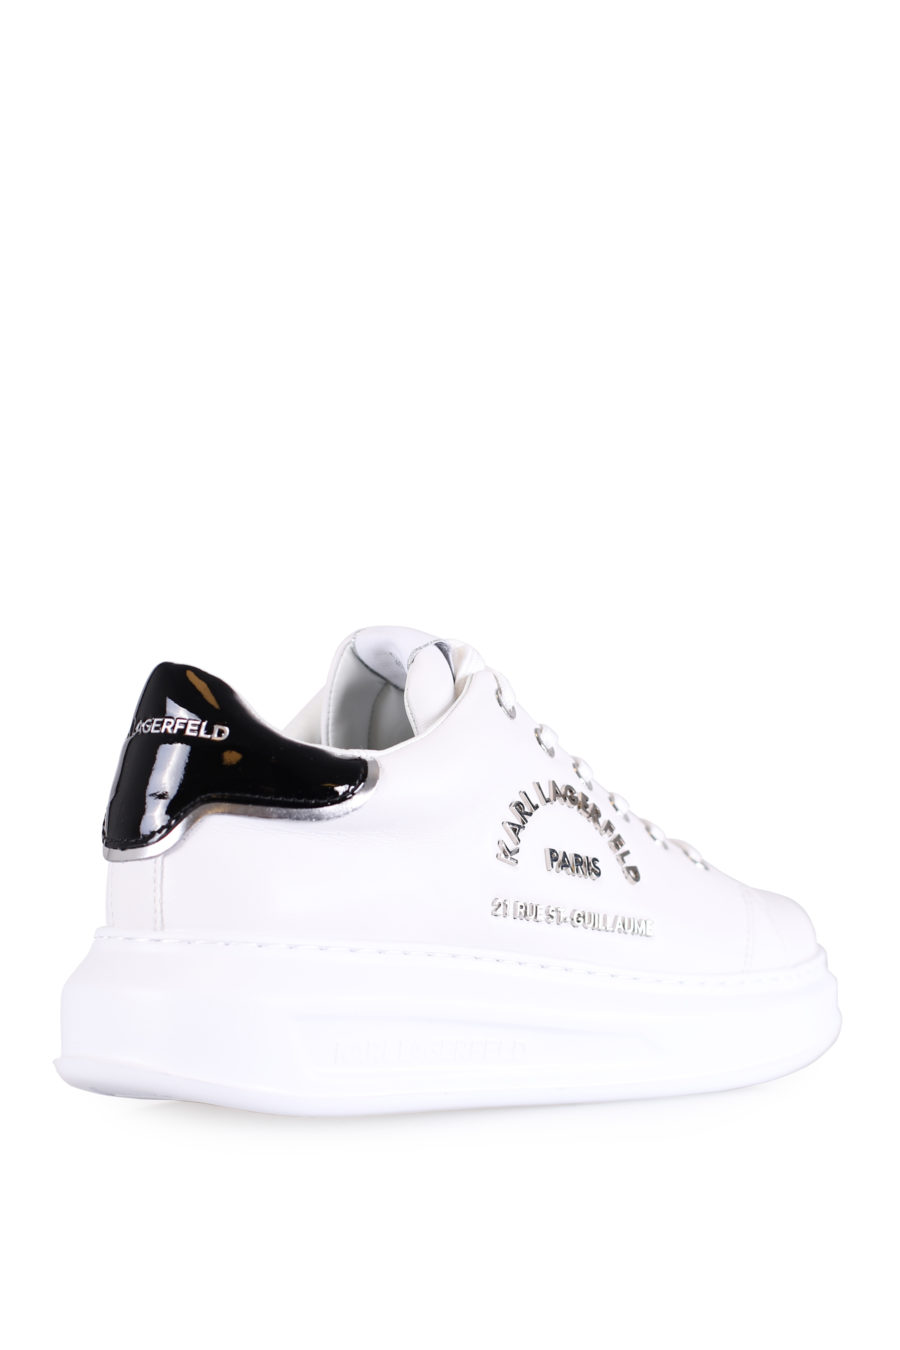 Zapatillas blancas con logotipo "Maison" plateado - IMG 0759